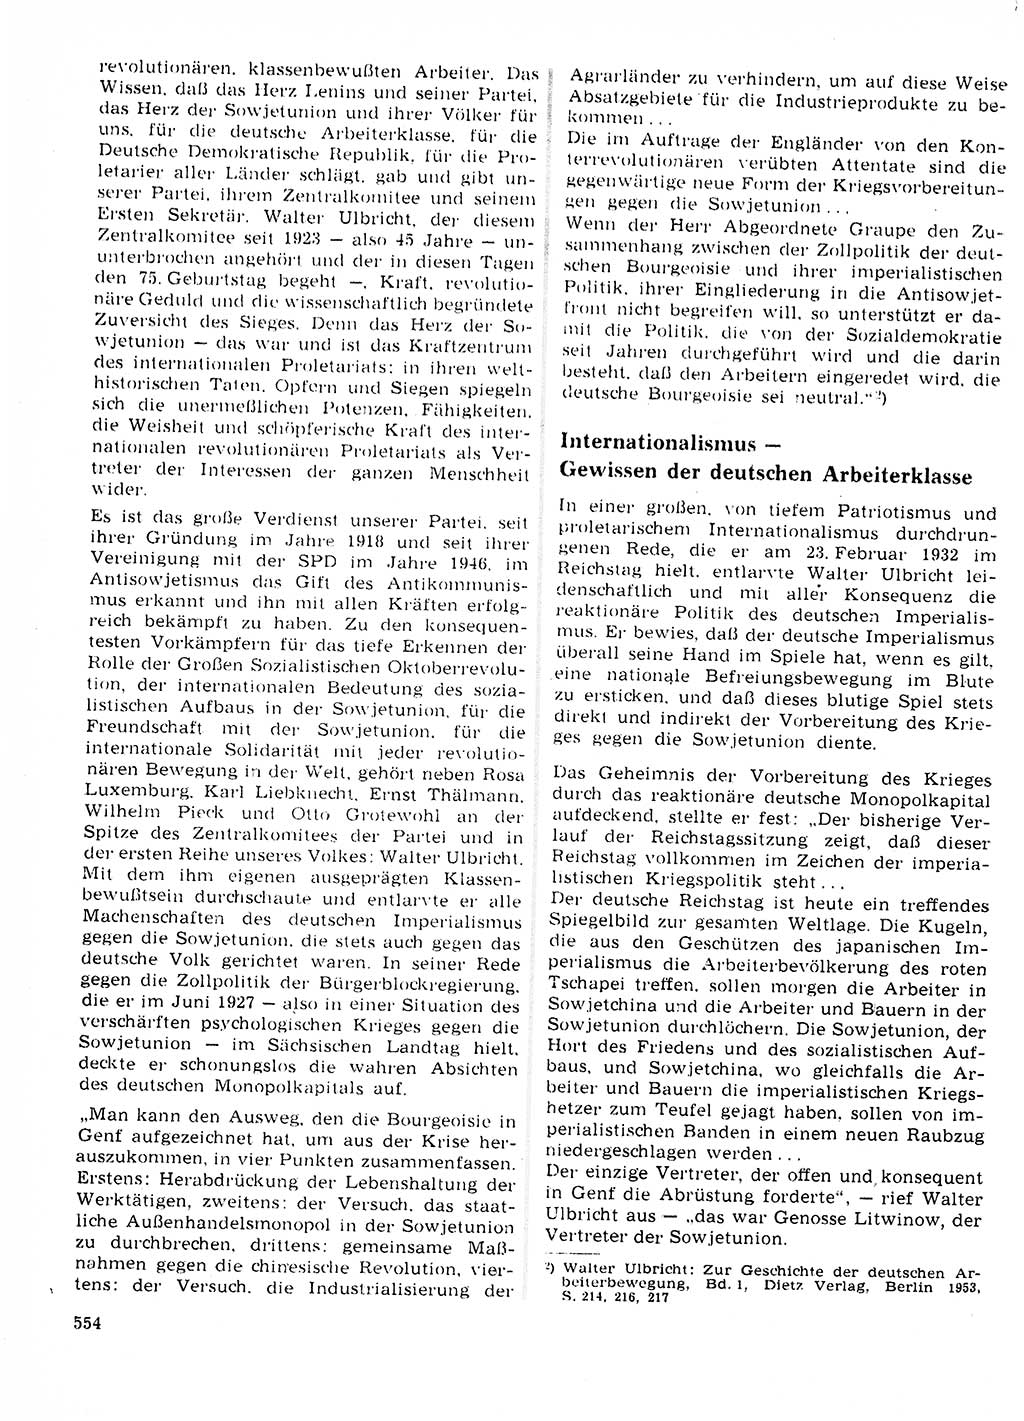 Neuer Weg (NW), Organ des Zentralkomitees (ZK) der SED (Sozialistische Einheitspartei Deutschlands) für Fragen des Parteilebens, 23. Jahrgang [Deutsche Demokratische Republik (DDR)] 1968, Seite 554 (NW ZK SED DDR 1968, S. 554)